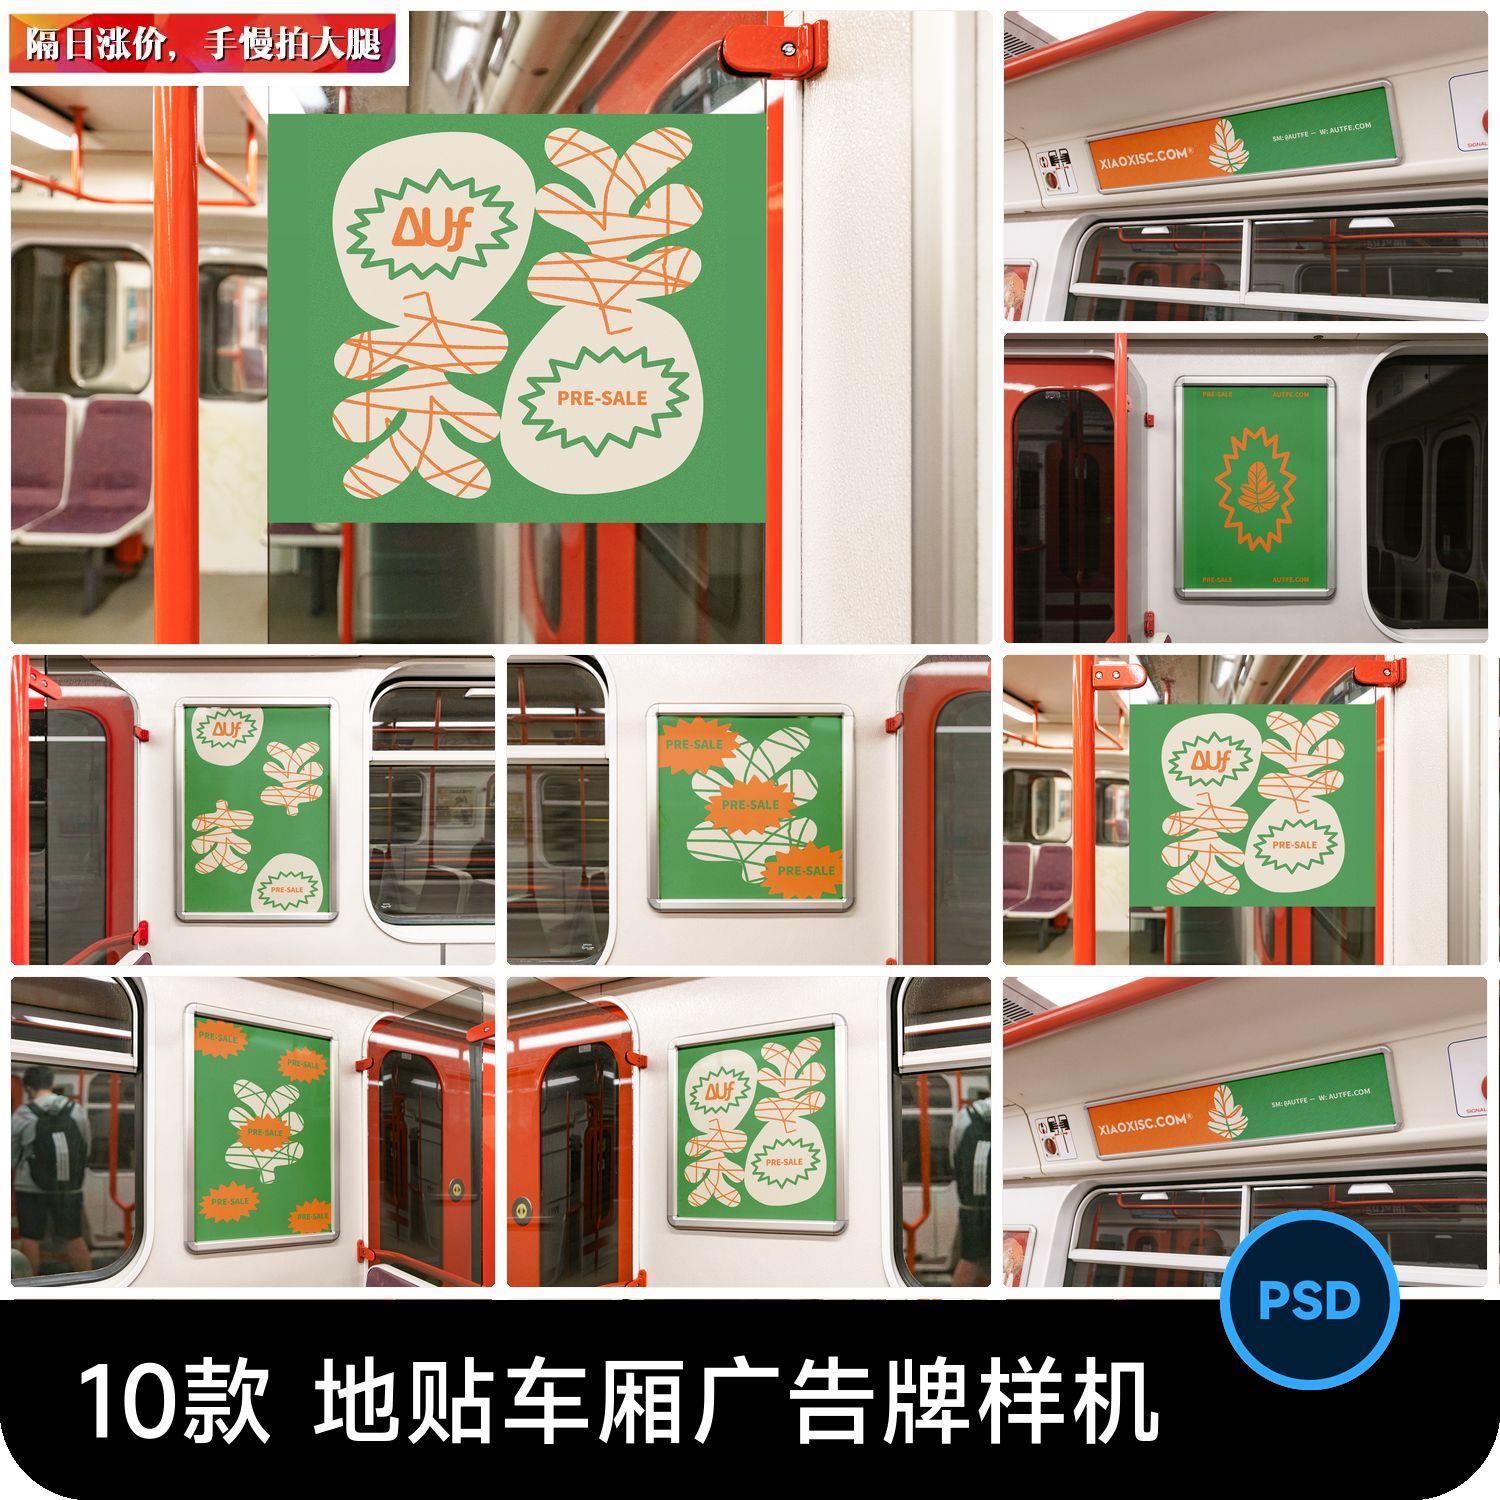 地铁轻轨列车车厢广告牌宣传海报VI效果展示贴图样机PSD设计素材